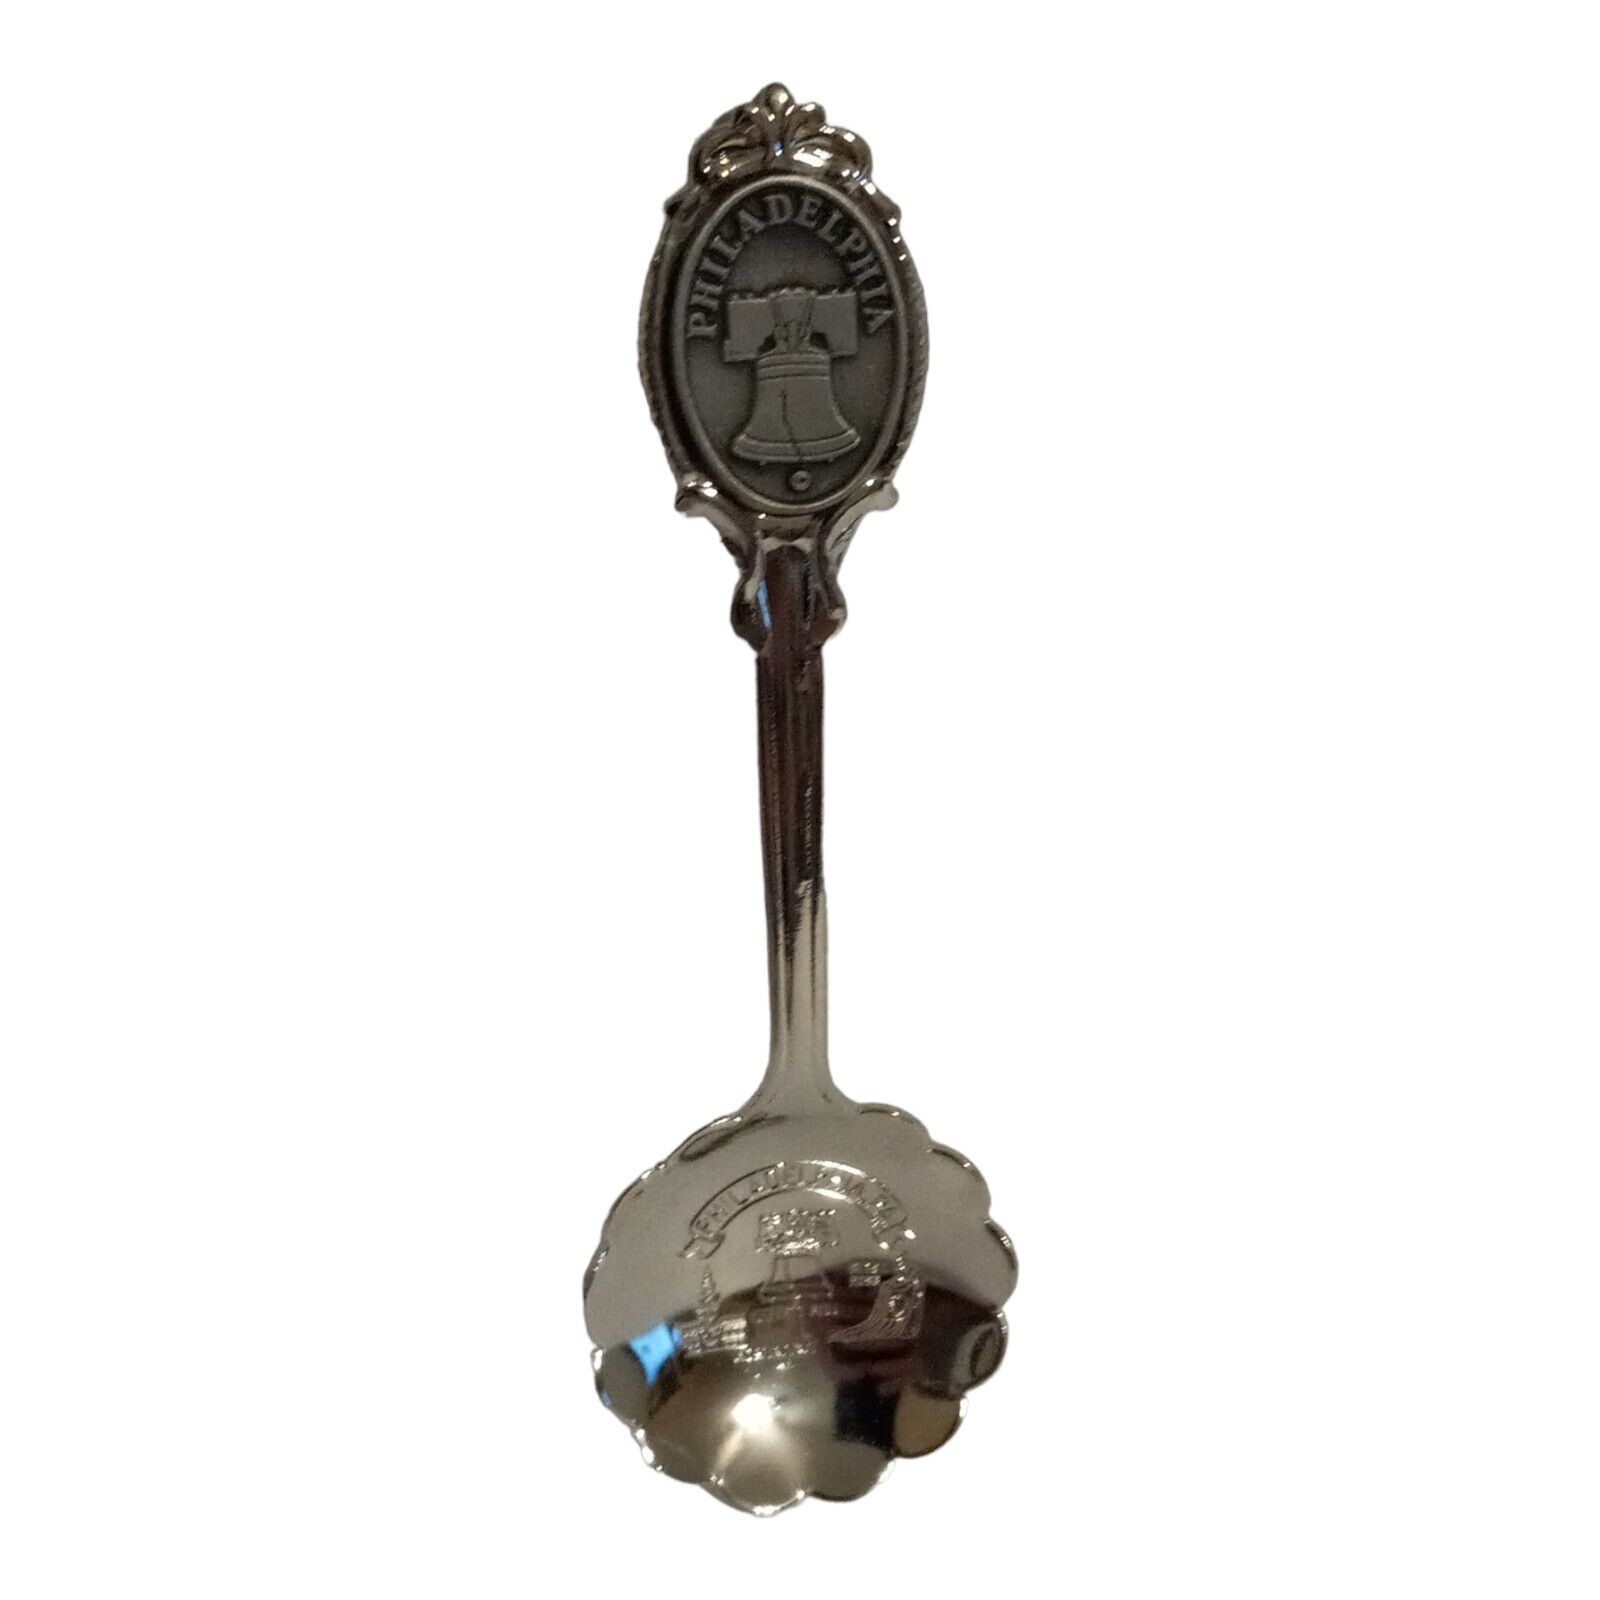 Philadelphia Pennsylvania Collectible Spoon Liberty Bell Travel Souvenir